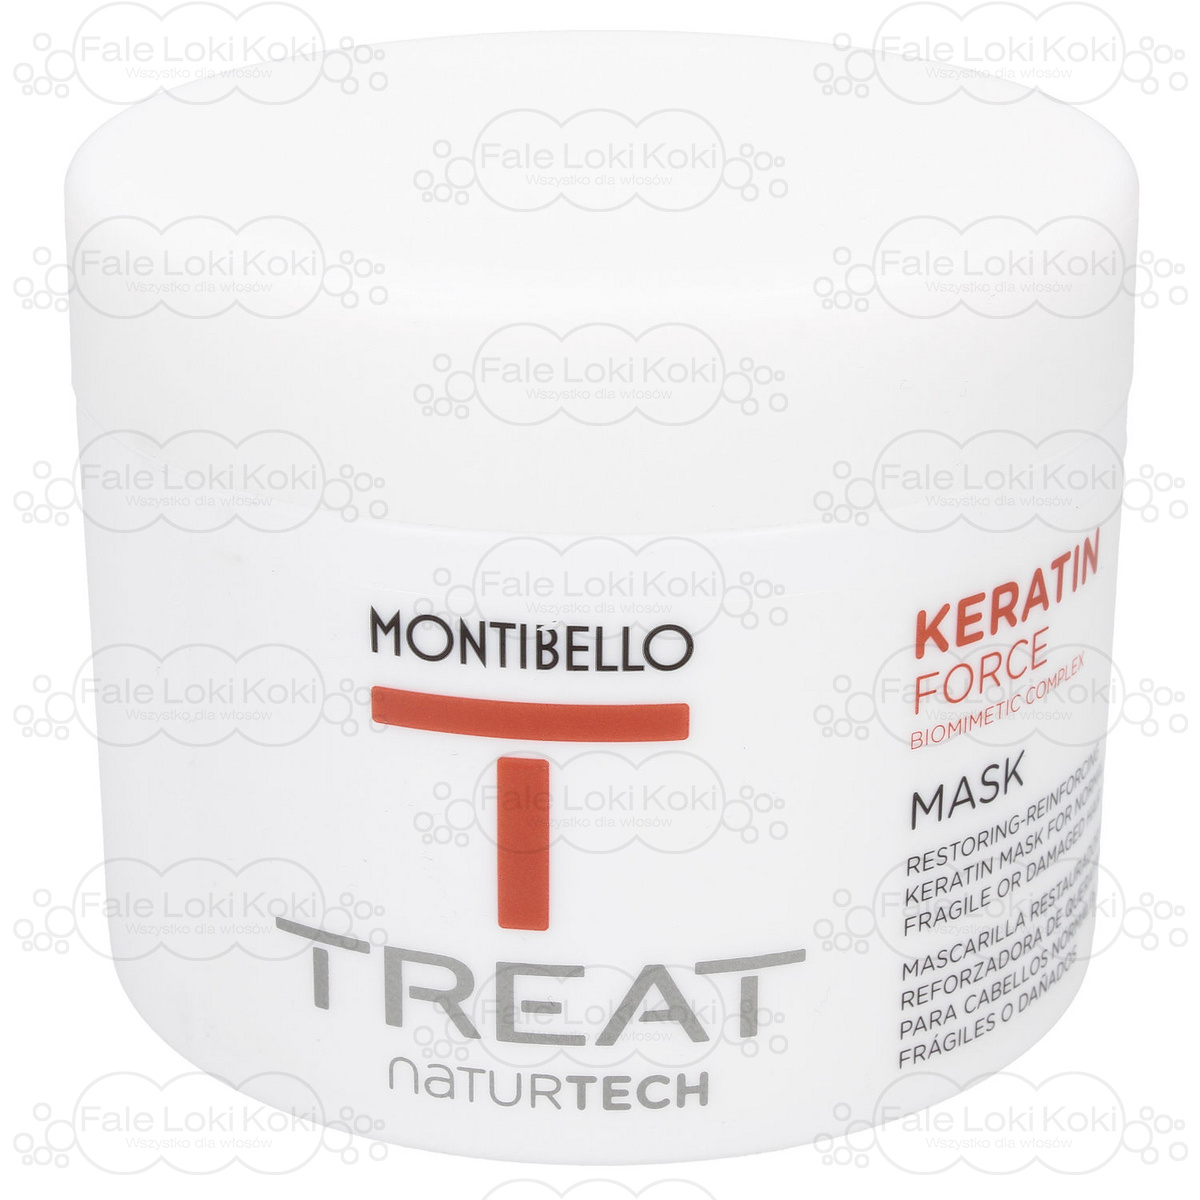 MONTIBELLO TREAT NATURTECH maska do włosów łamliwych Keratin Force 500 ml